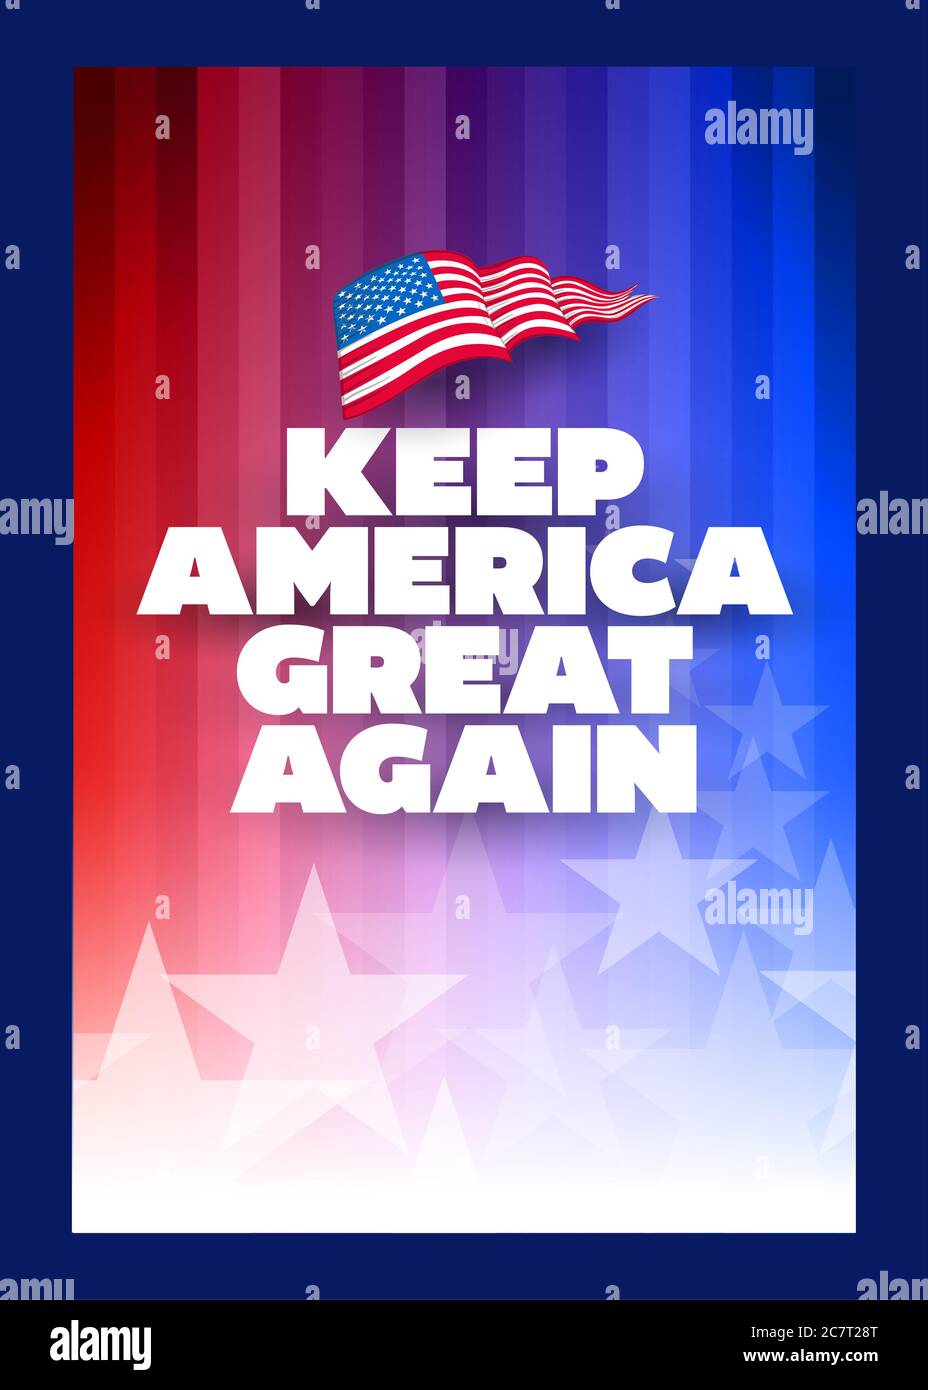 Plakat mit dem Wahlkampfmotto des Präsidenten. Halte Amerika wieder groß. Vorlage für das Konzept-Design. Typografisches Vektordesign. Politischer Wahlkampf Stockfoto